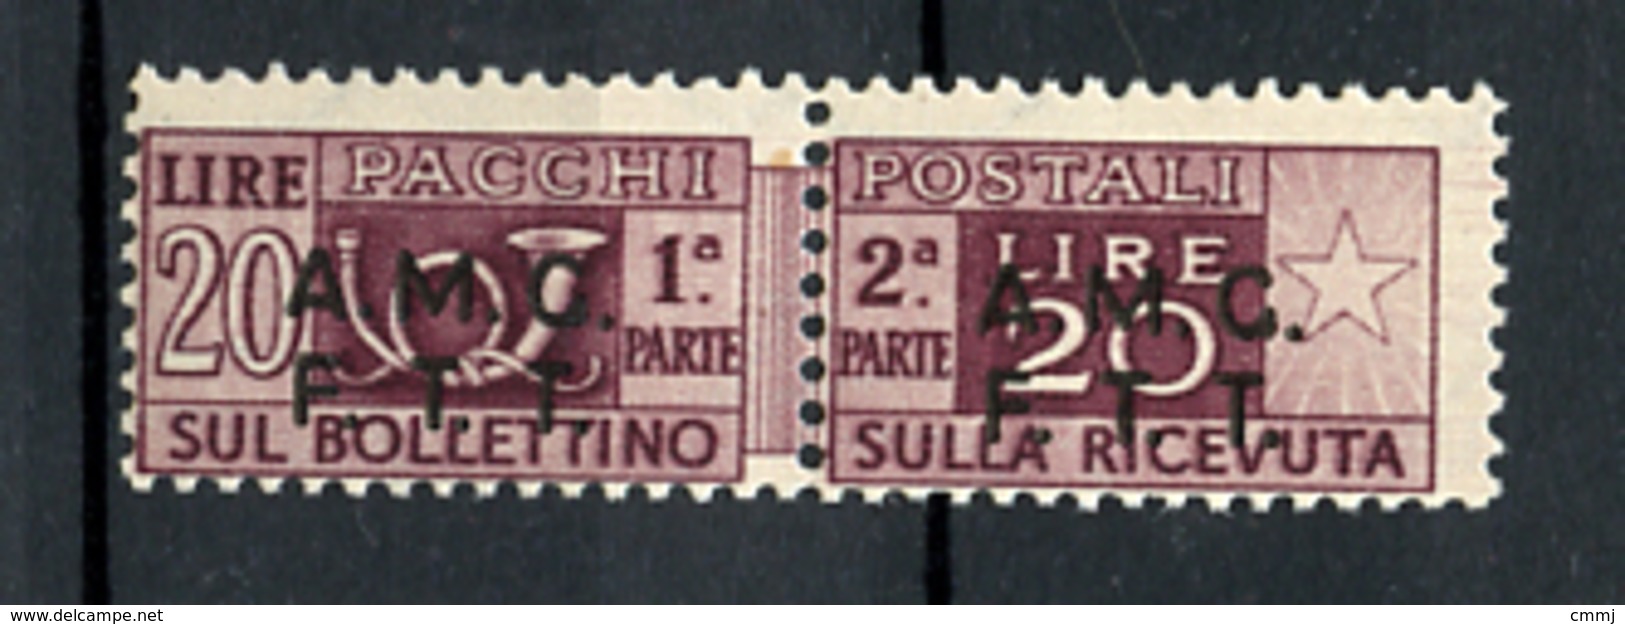 1947 -  TRIESTE  A -  Italia - Italy - Italie - Italien - Catg. Unif. .  7  -  NH - (B15012012...) - Postpaketen/concessie